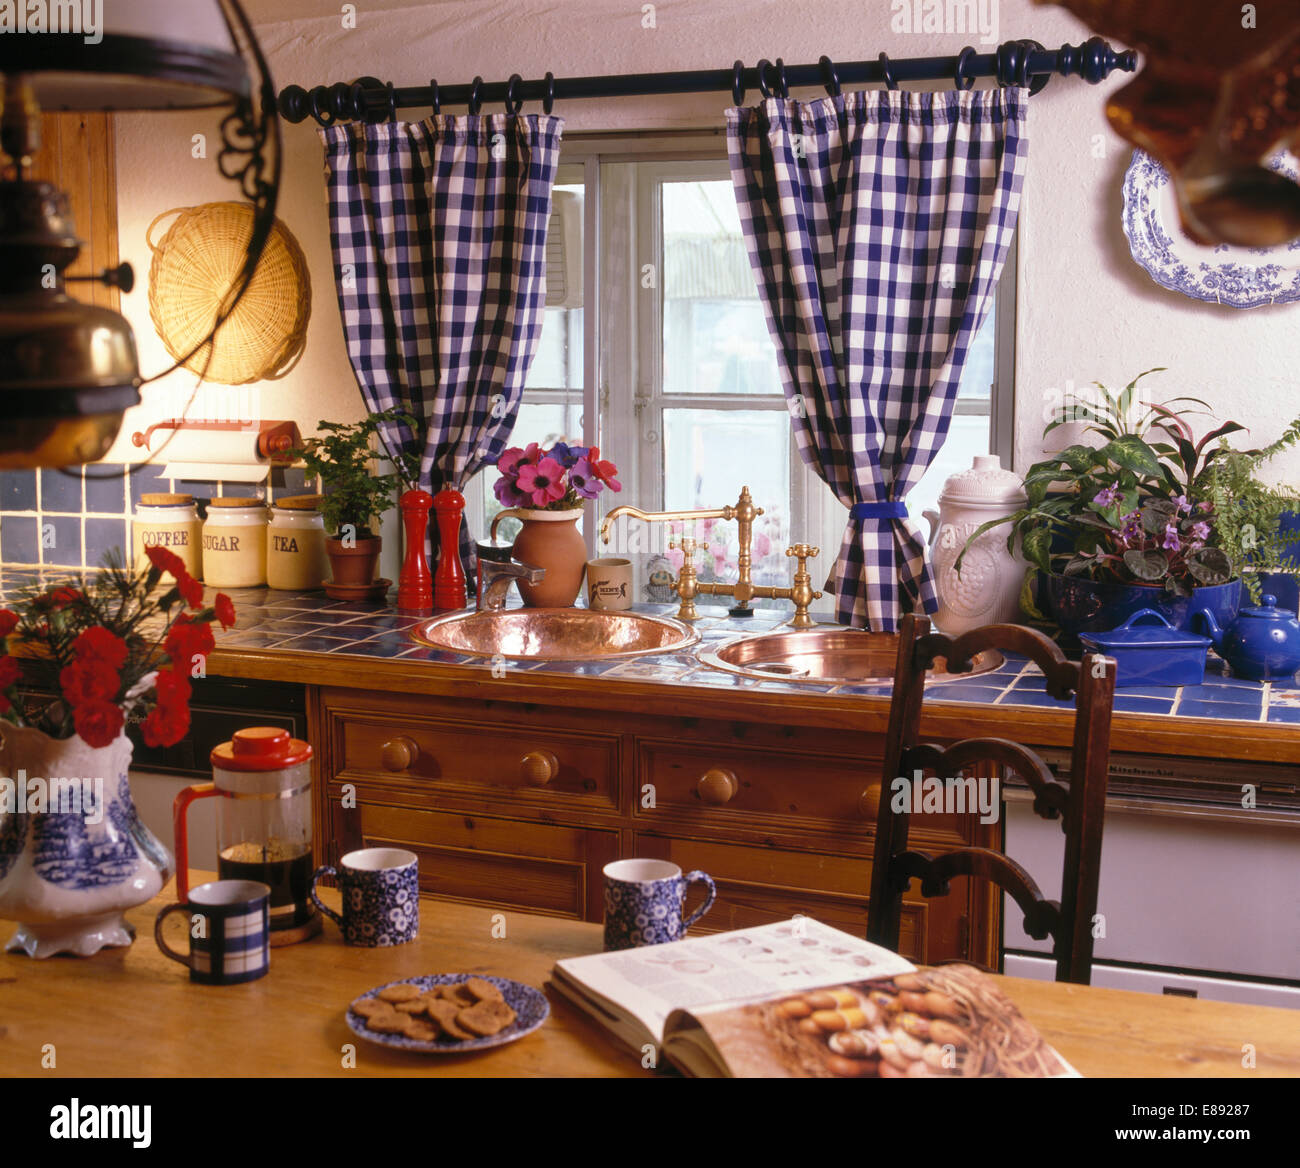 Blue+bianco tende selezionata sulla finestra in cottage con cucina cafetiere rosso e blu tazze sul tavolo Foto Stock